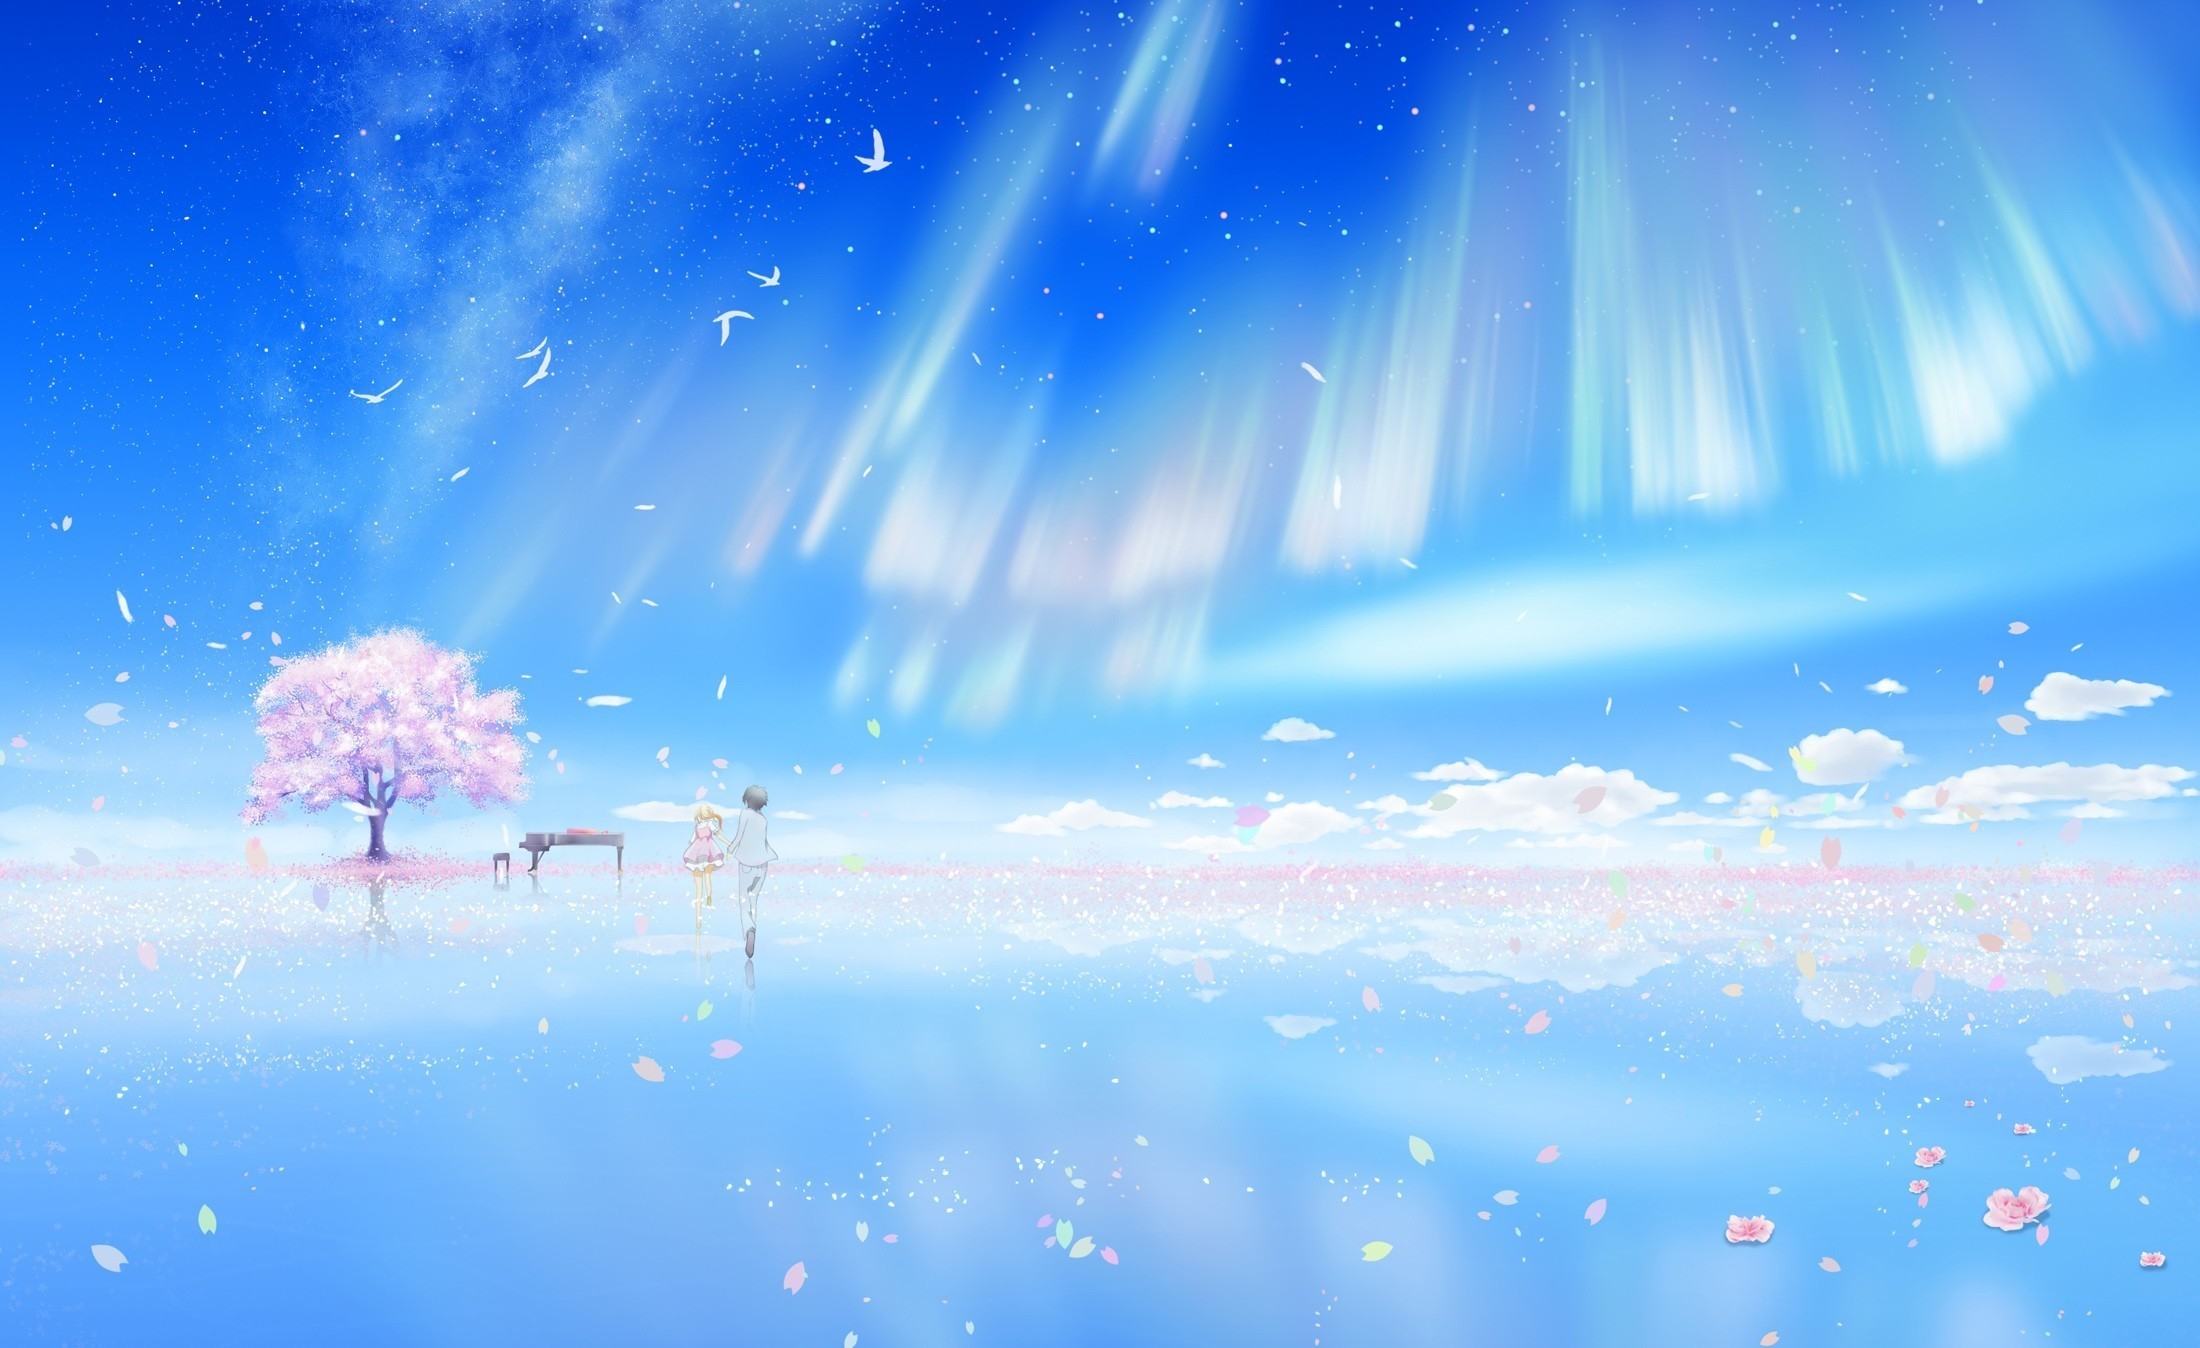 Shigatsu wa Kimi no Uso Wallpaper: My sparkling world - Minitokyo